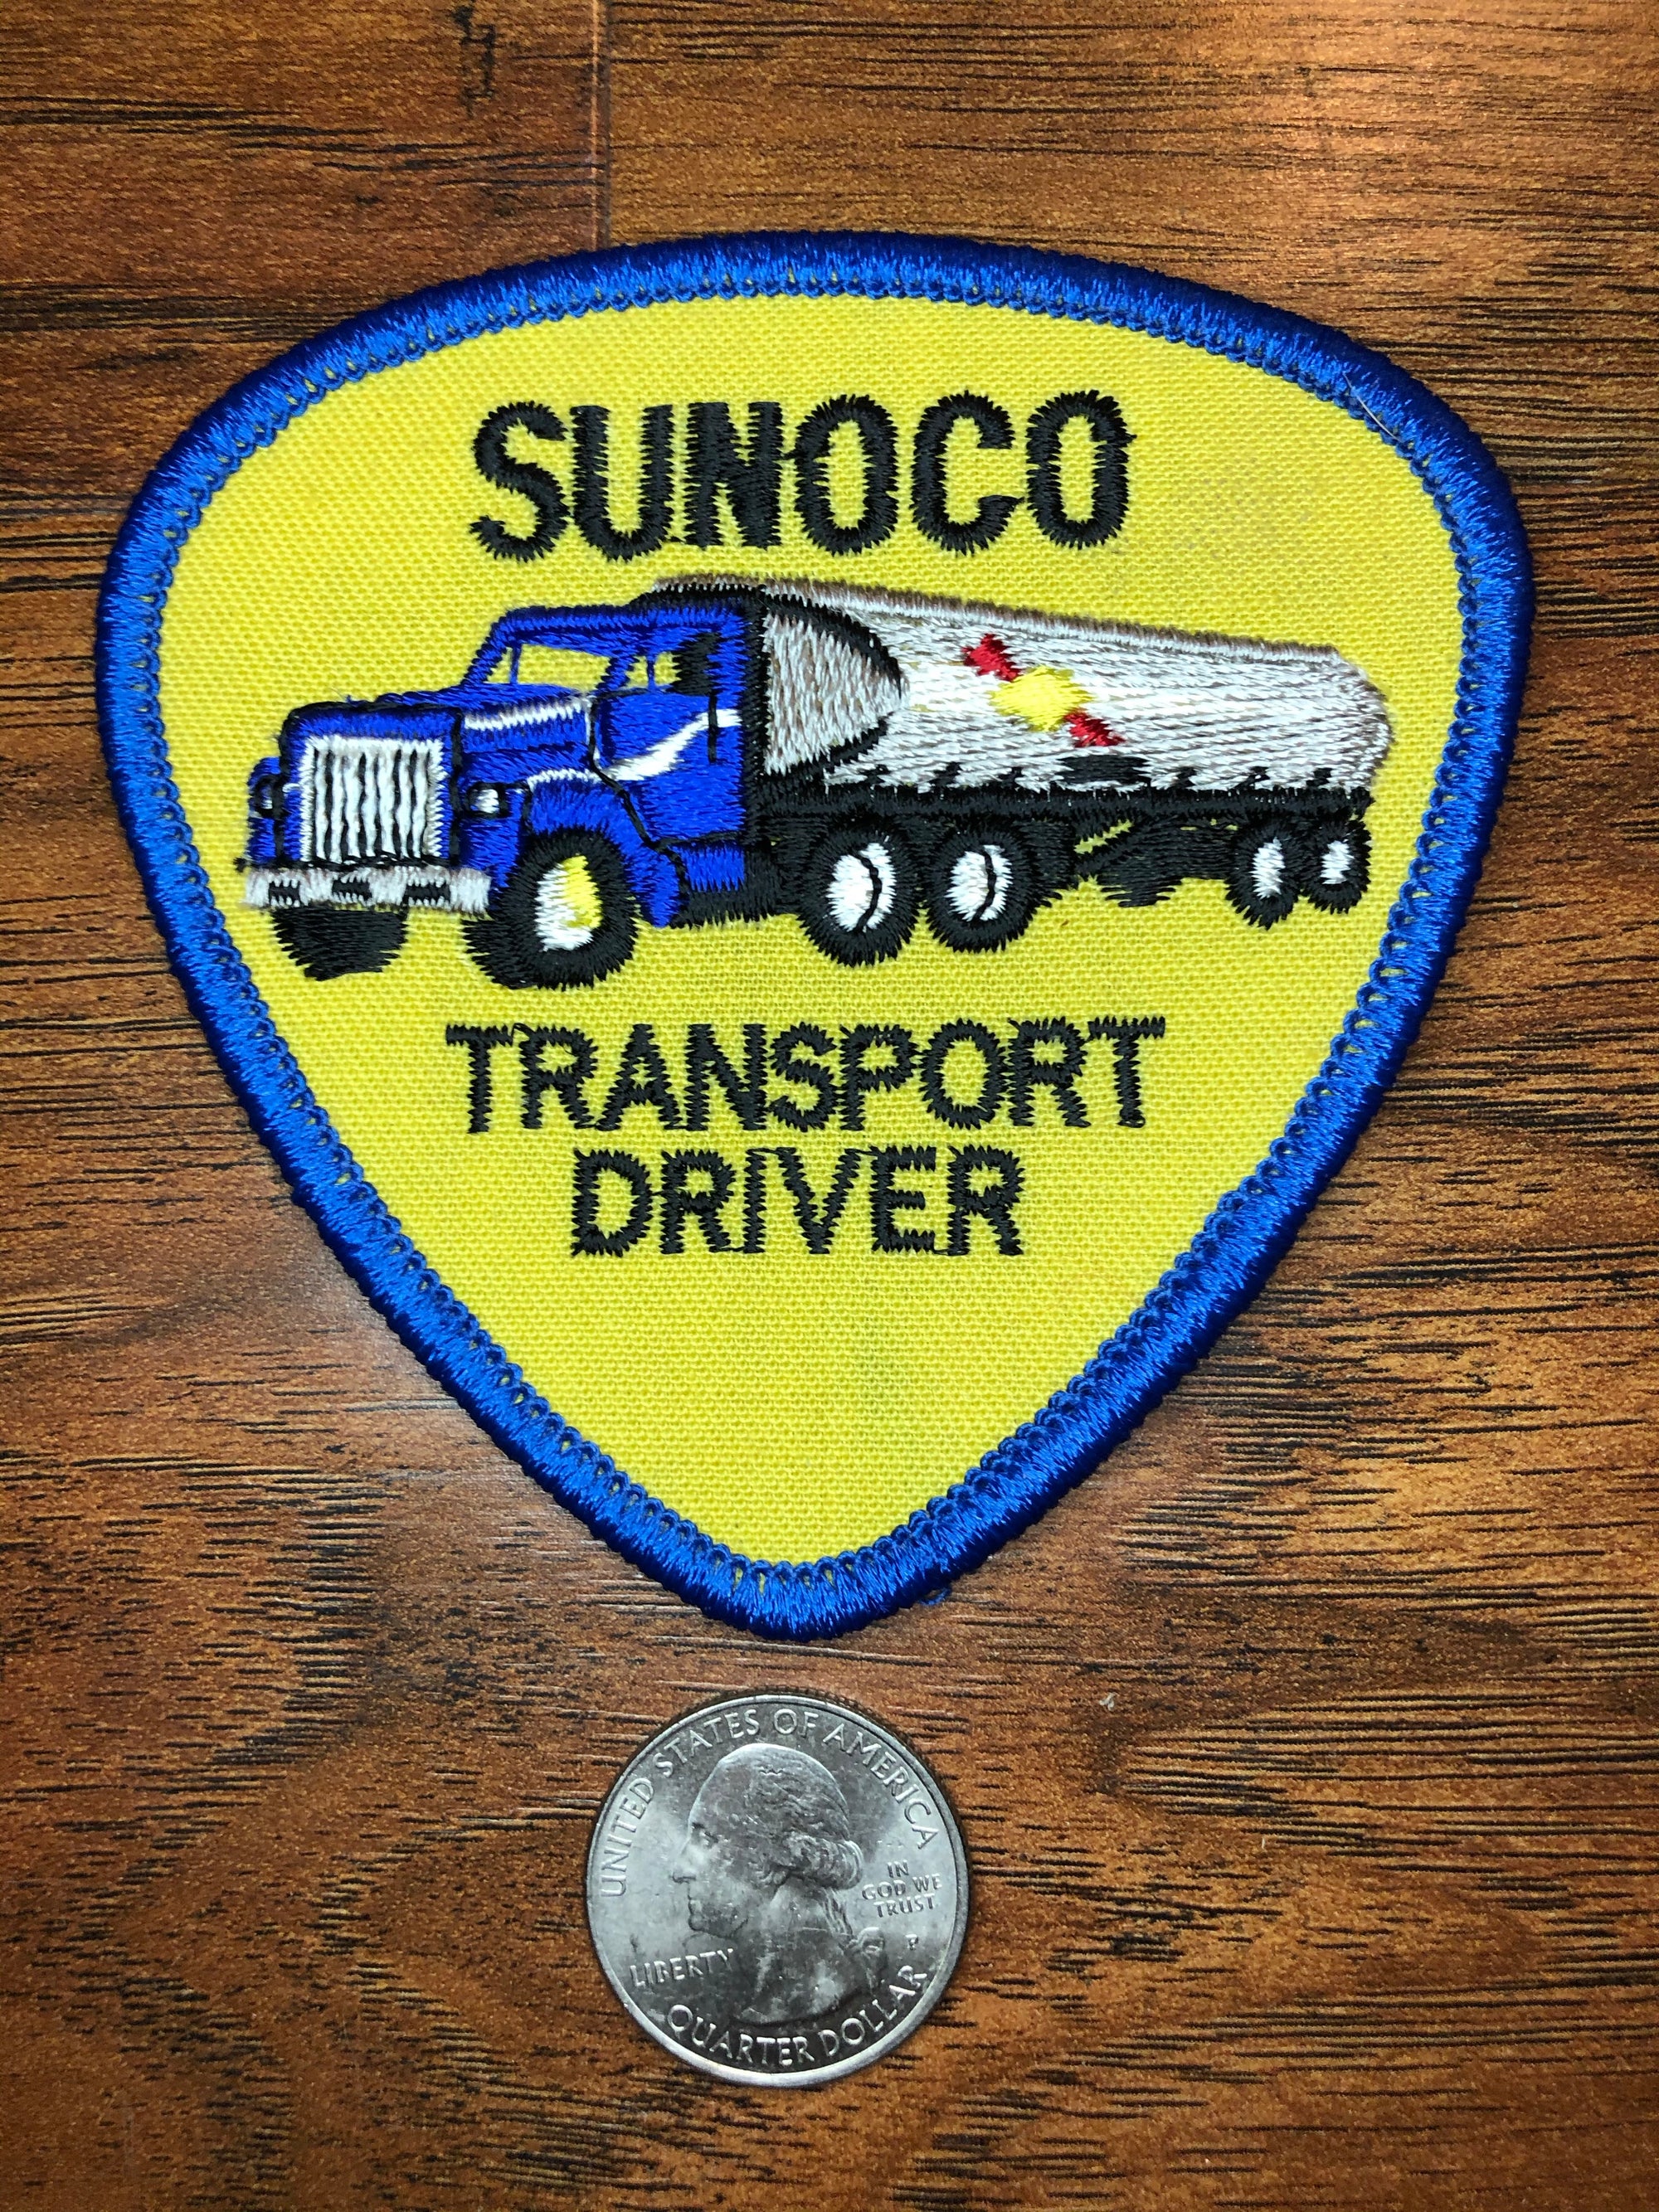 Vintage Sunoco Transport Driver